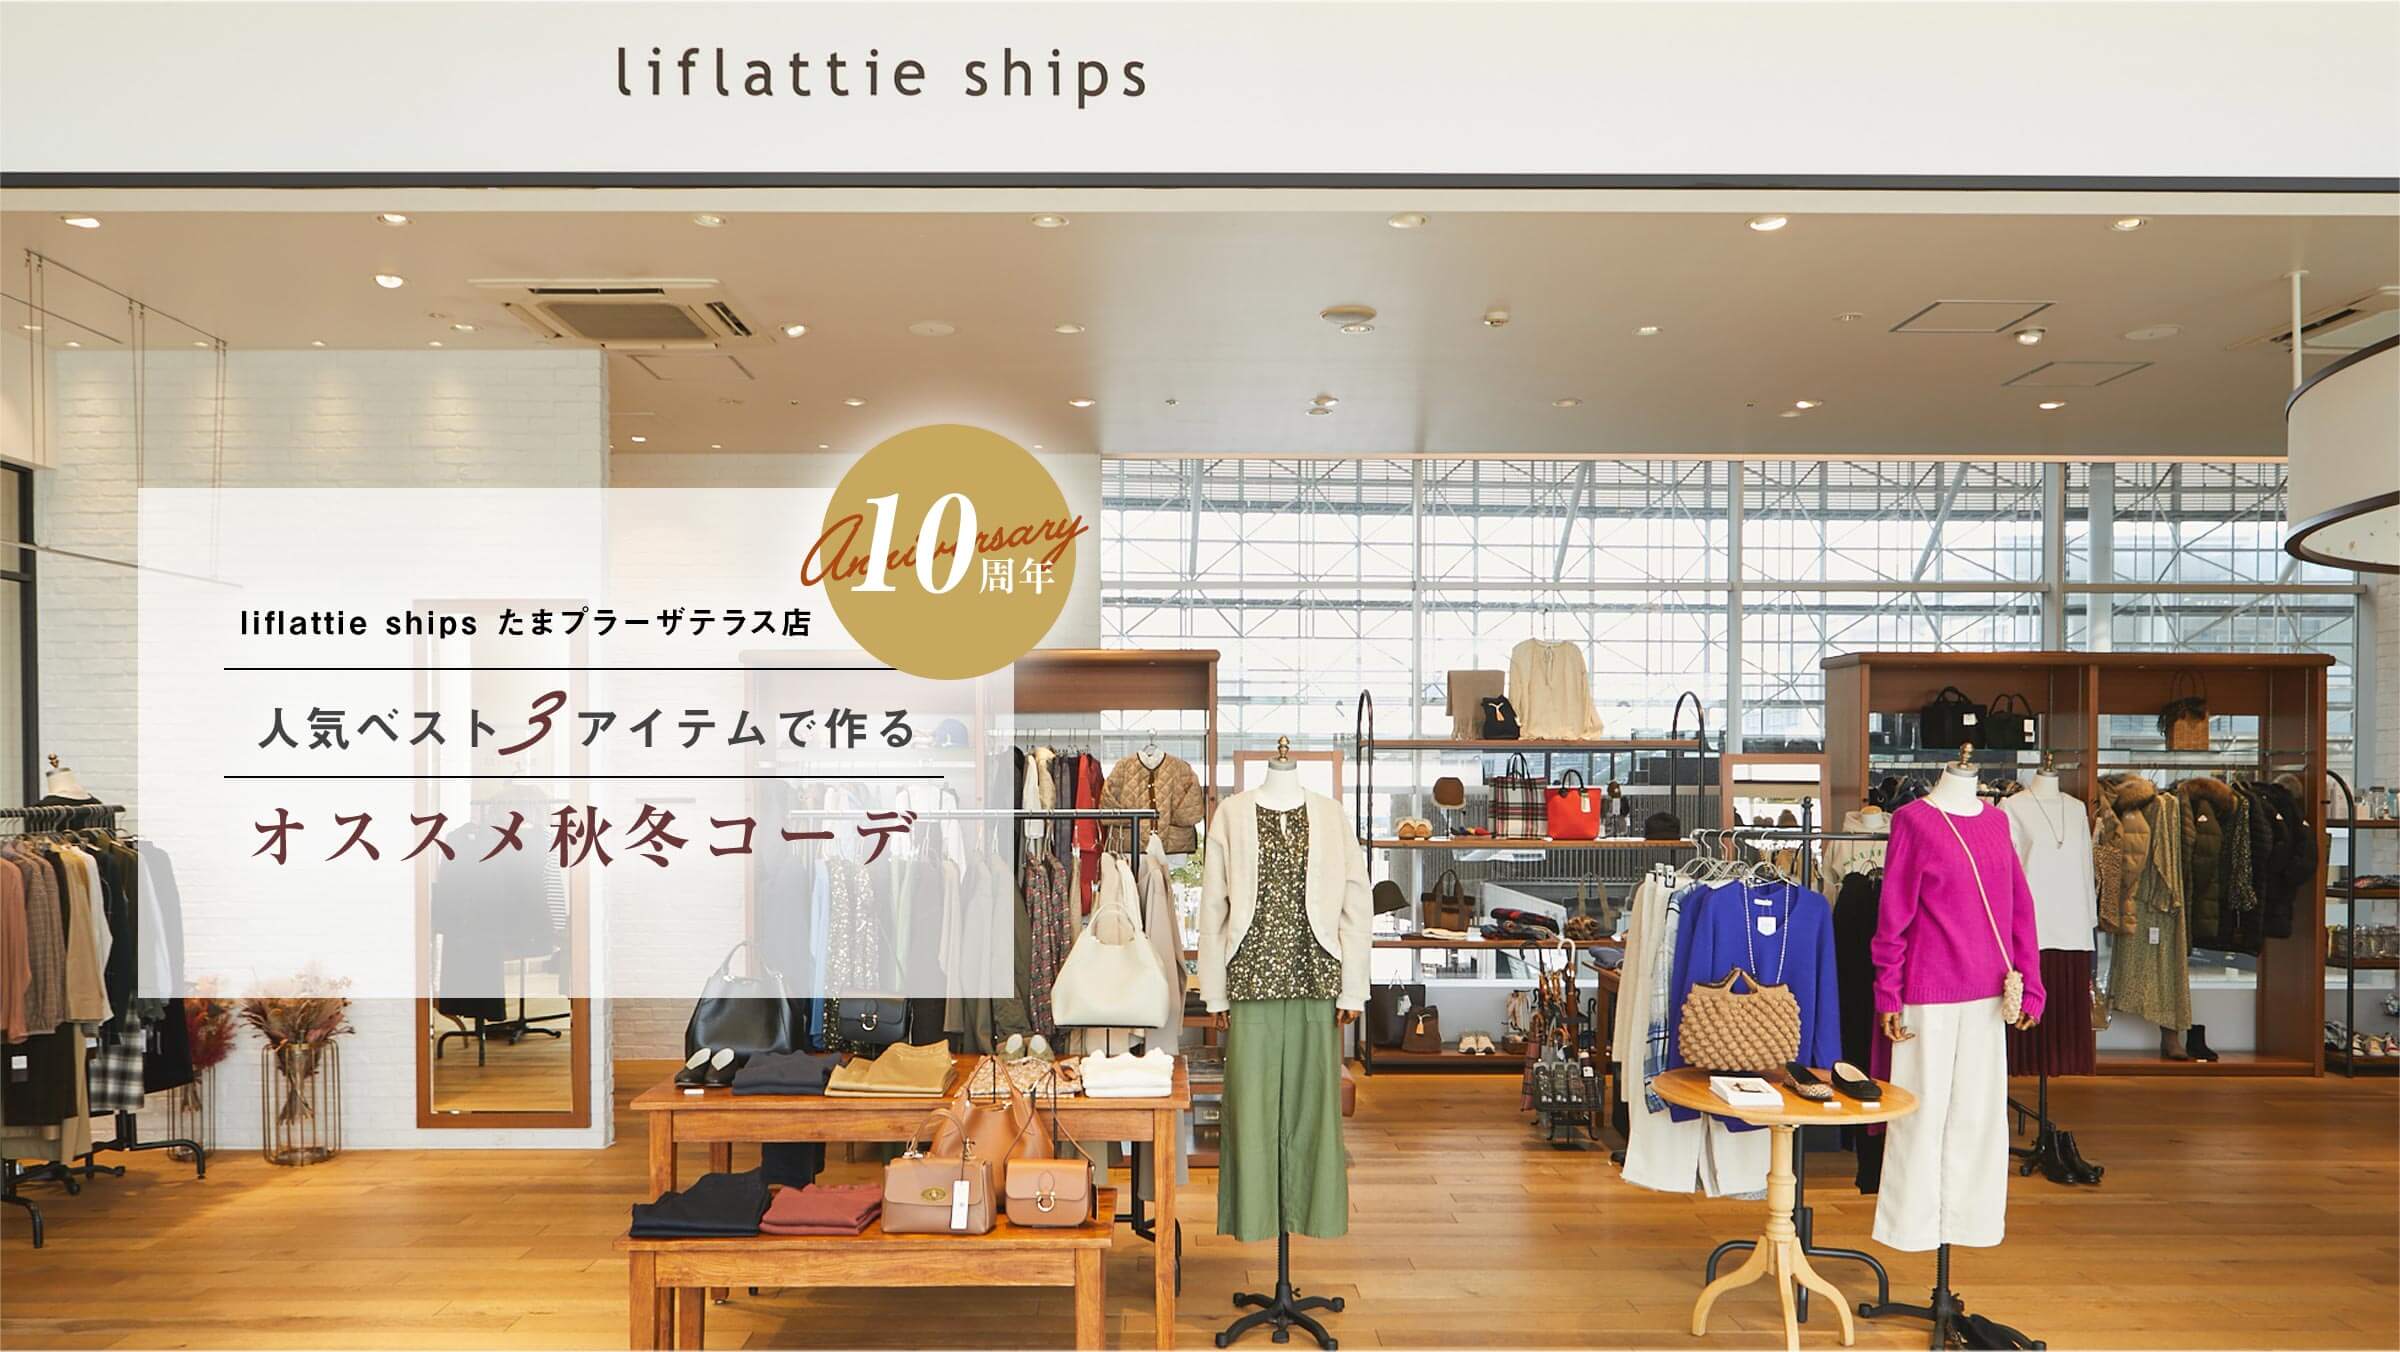 liflattie ships܃v[UeXX10NIlCxXg3ACeōAIXXH~R[f